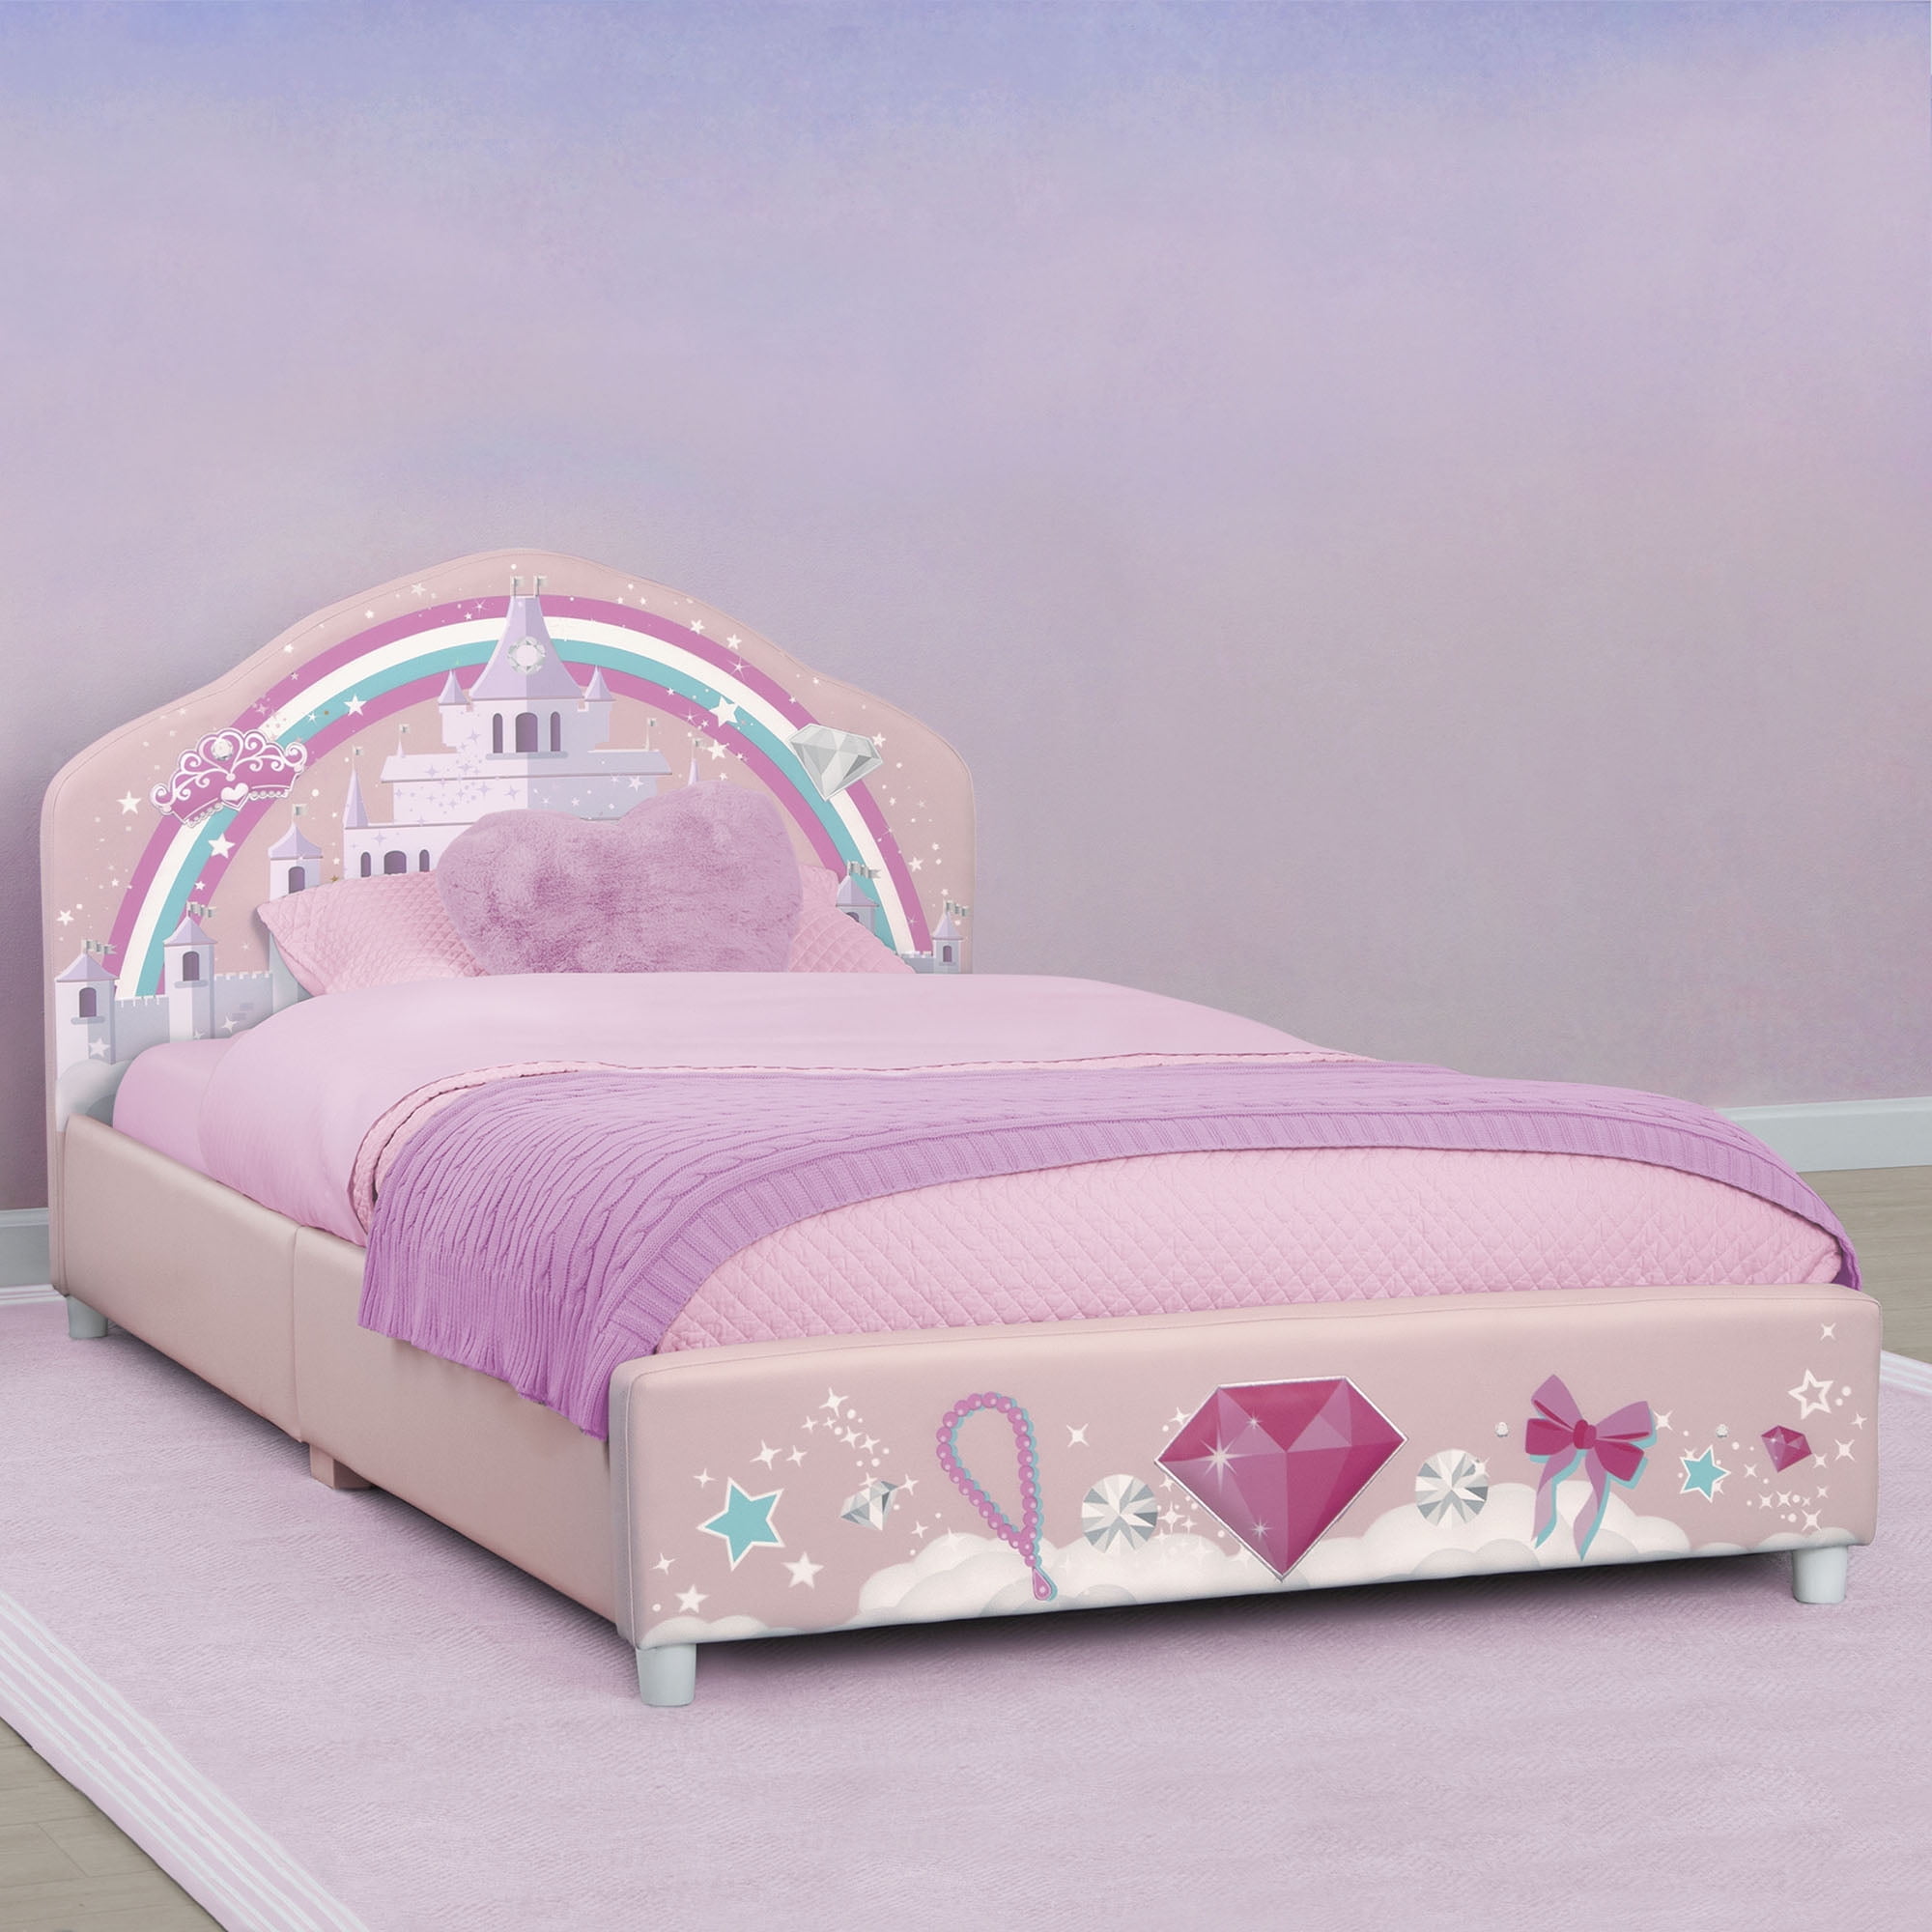 Delta Children Princess Upholstered, Step 2 Princess Castle Toddler Twin Bedroom Set